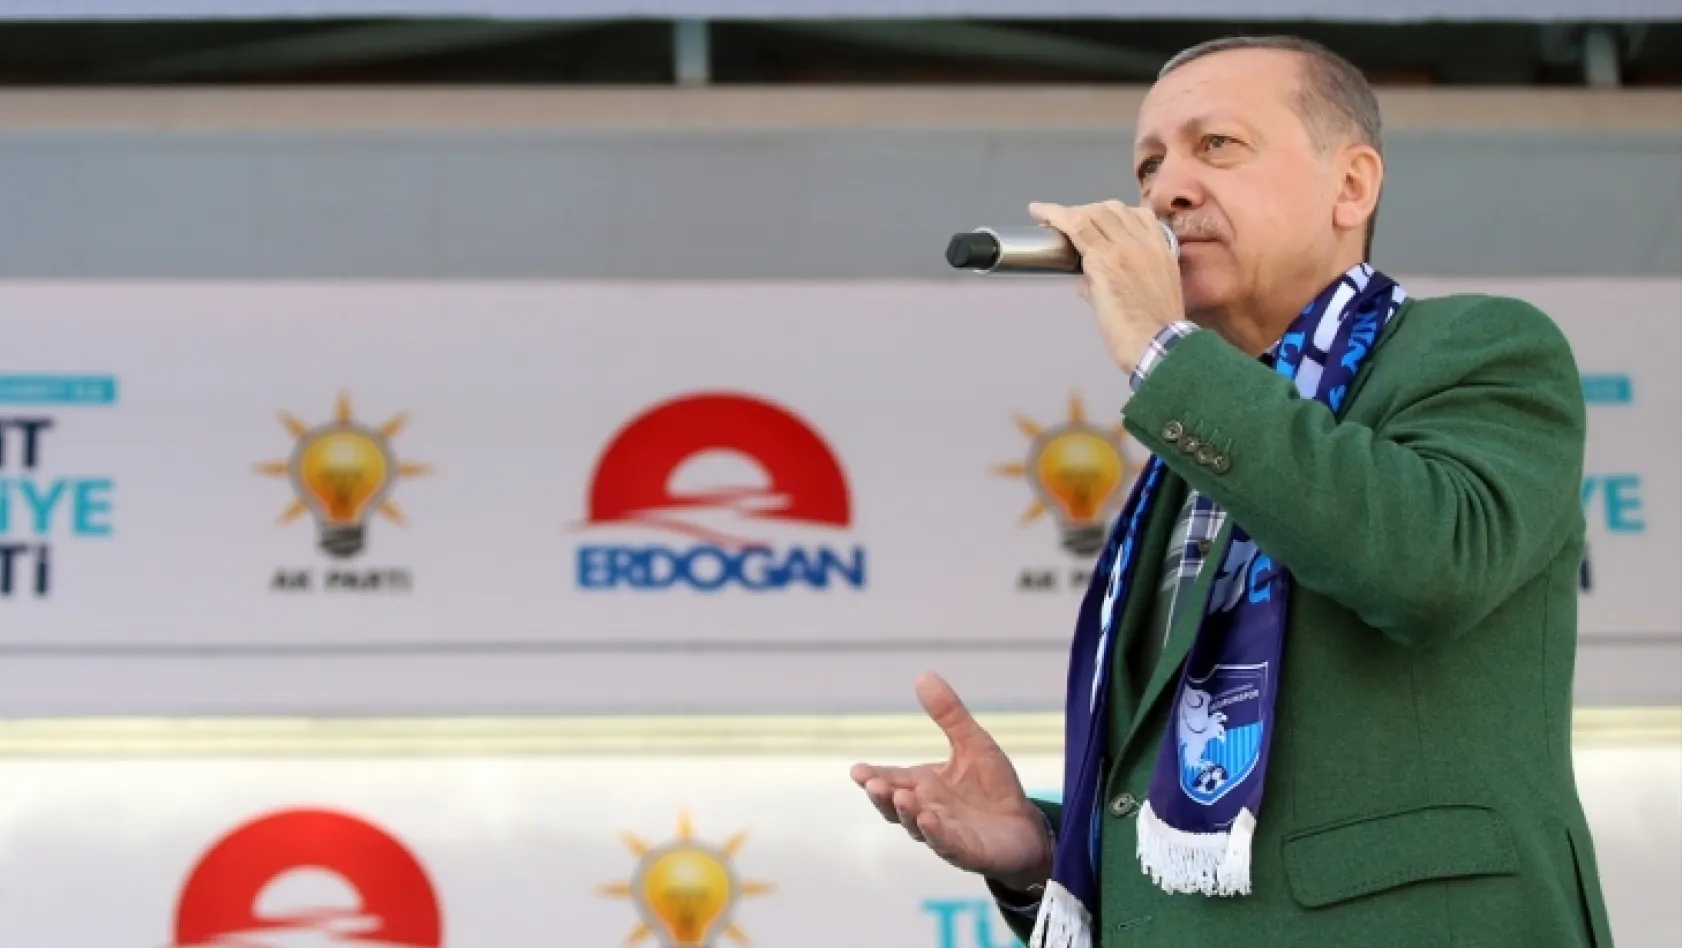 Erdoğan'dan Erzurum'da indirim müjdesi